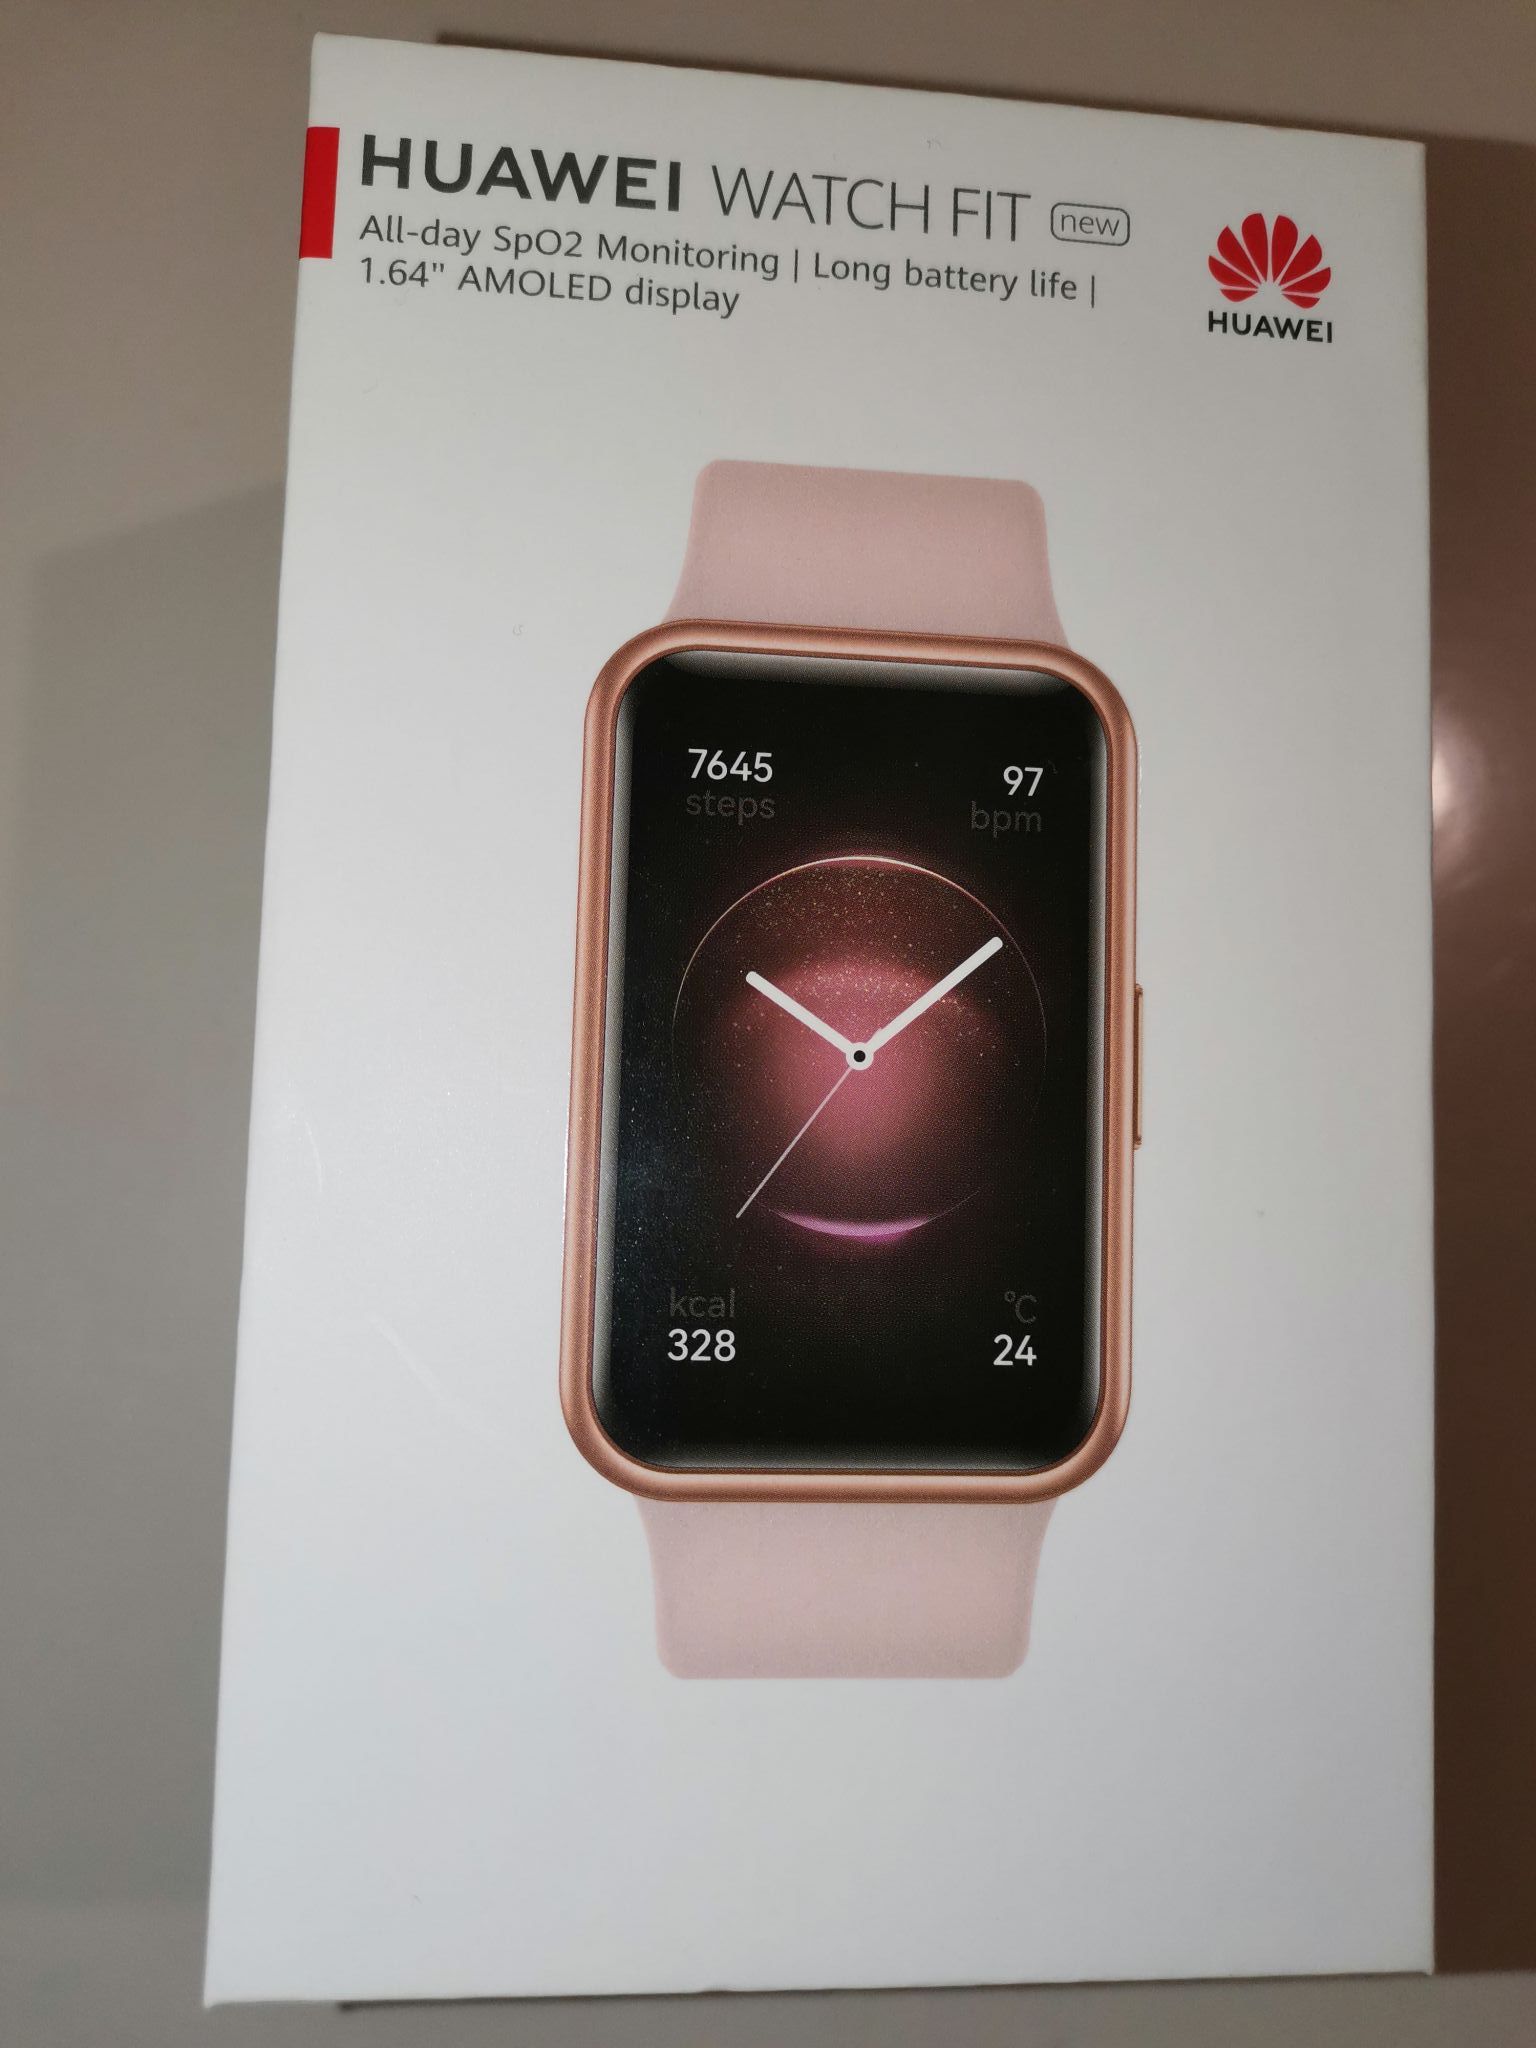 Huawei watch fit sakura. Смарт-часы Fit 2 Sakura Pink Silicone Strap, yda-b09s золотистый/розовый. Huawei watch Fit New. Смарт-часы Huawei watch Fit New Sakura Pink (Tia-b09). Watch Fit 2 Active Edition розовый.